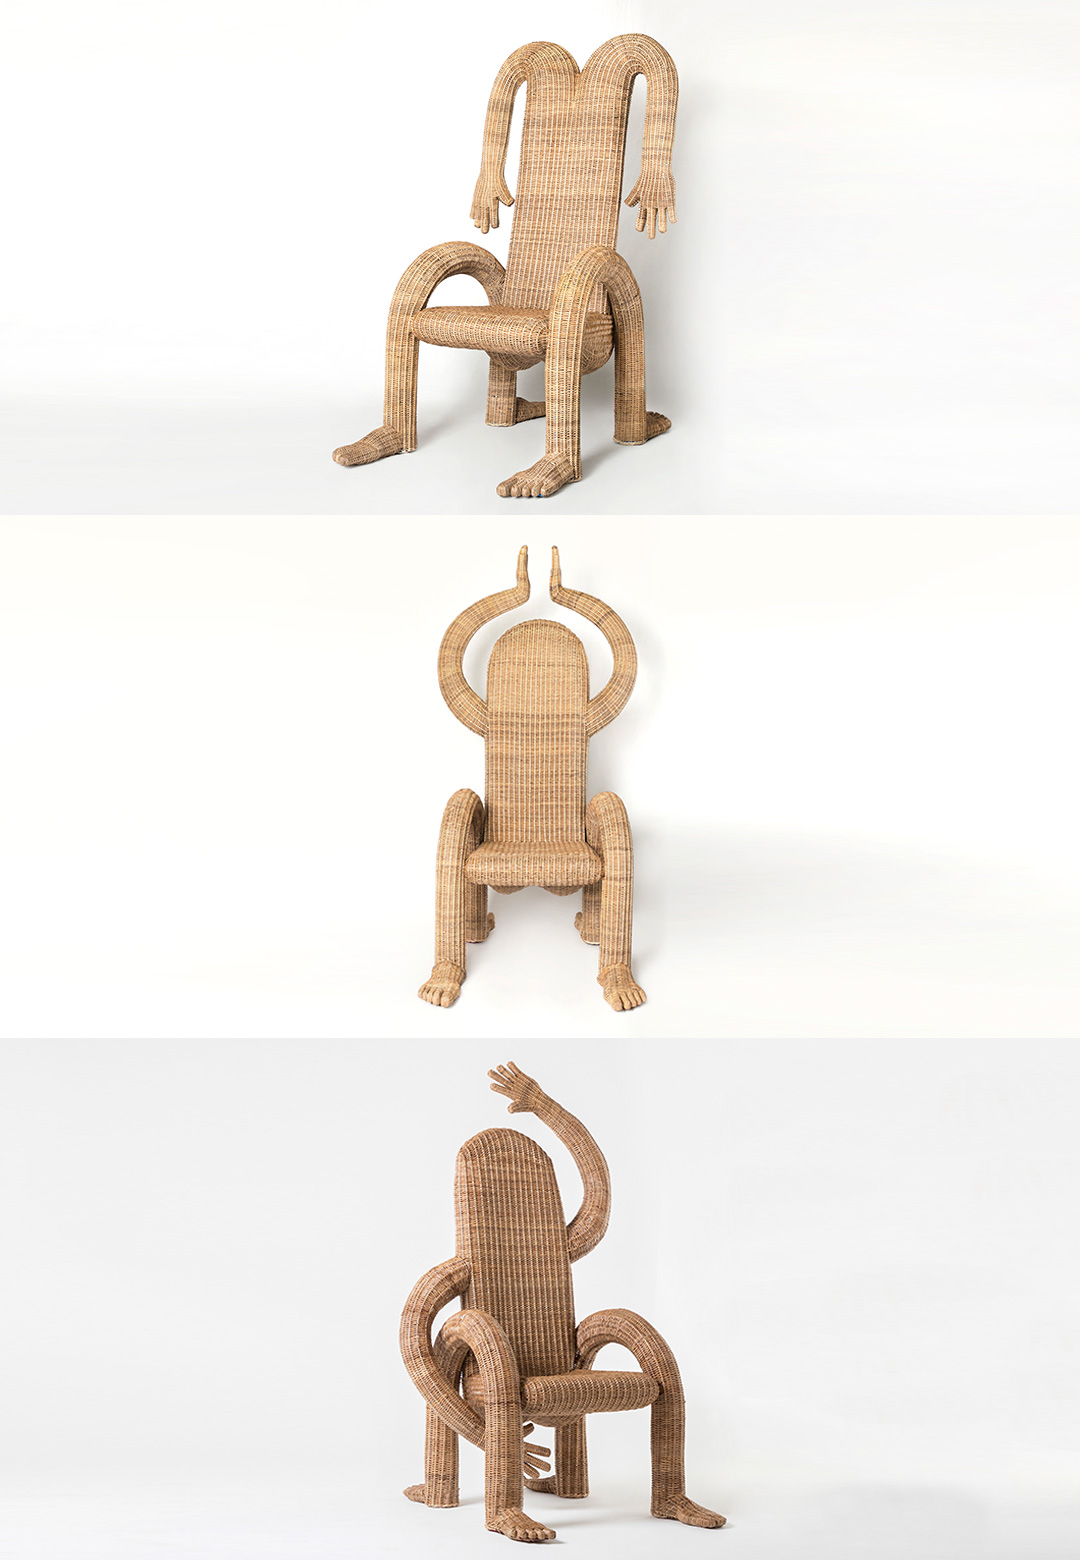 Chris Wolston's ‘Nalgona’ merges human anatomy with the ergonomics of chairs